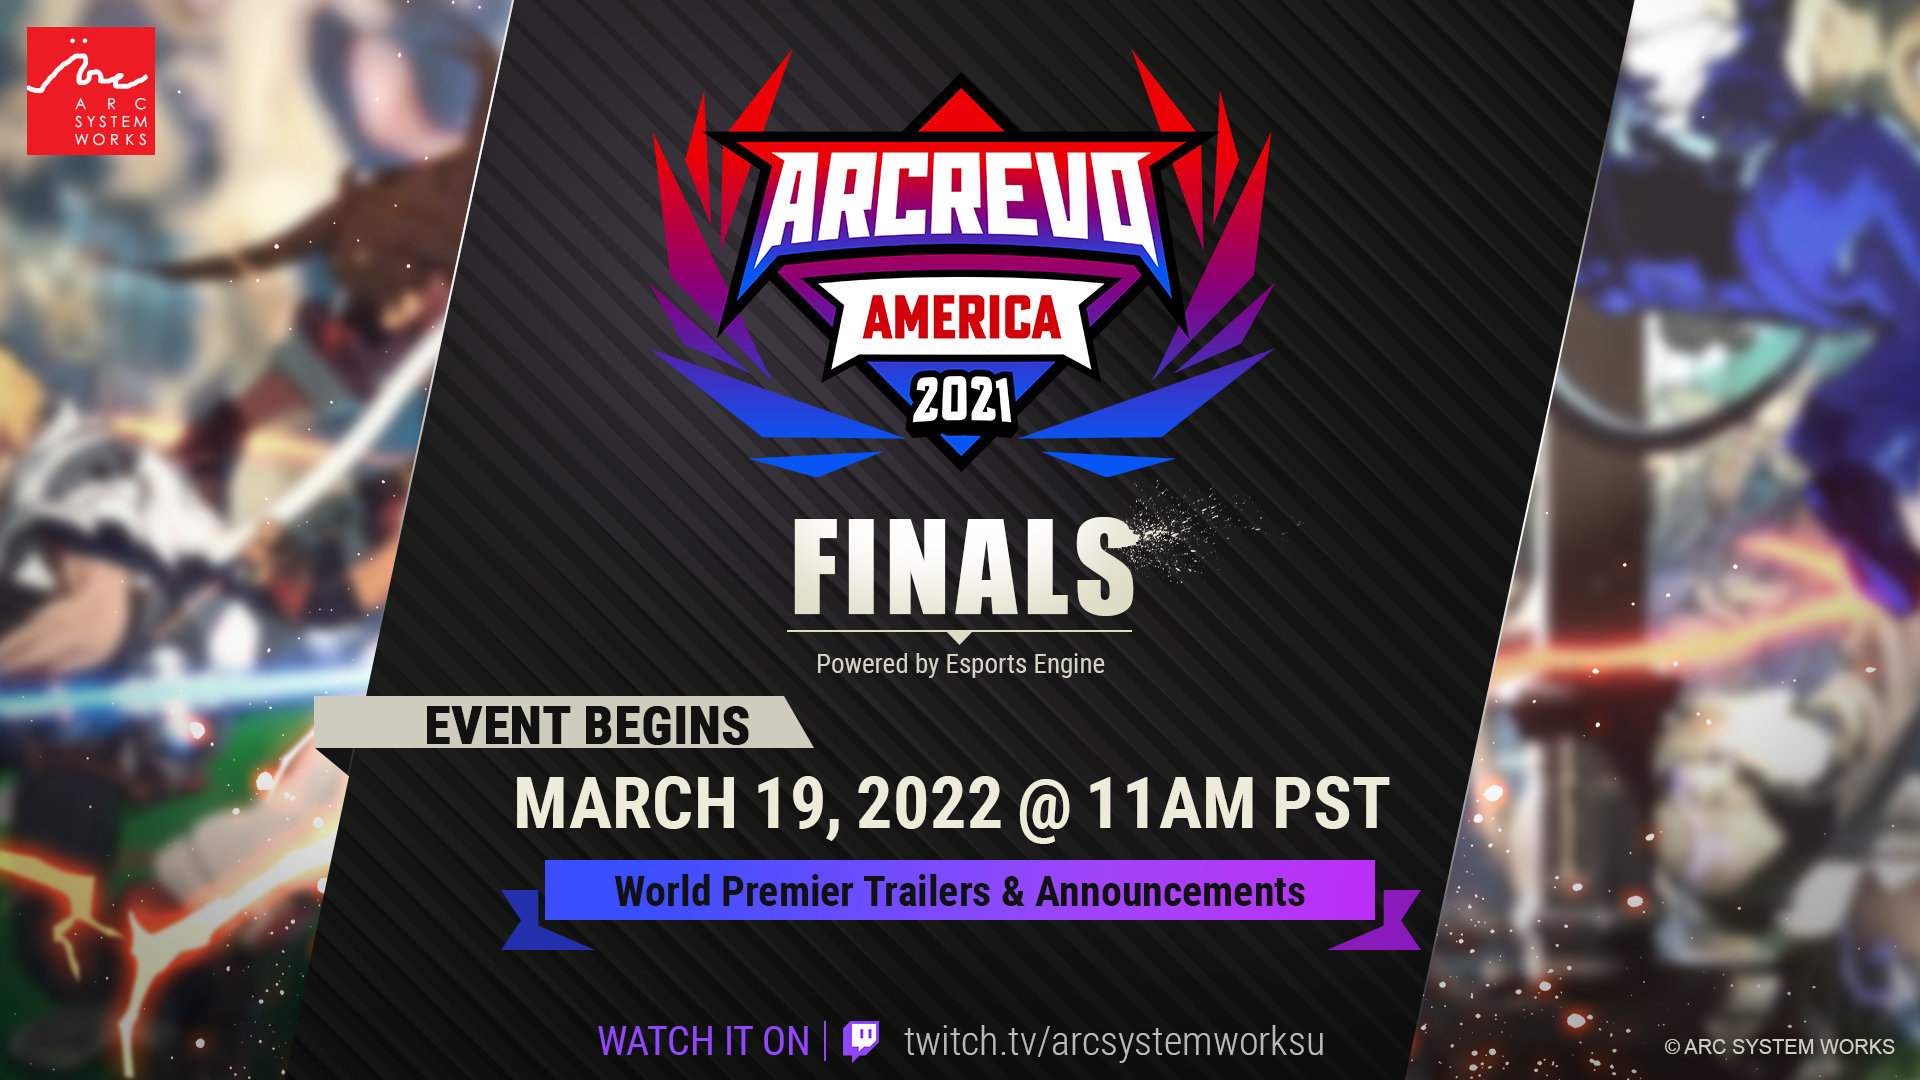 ARCREVO America 2021 finals announced!